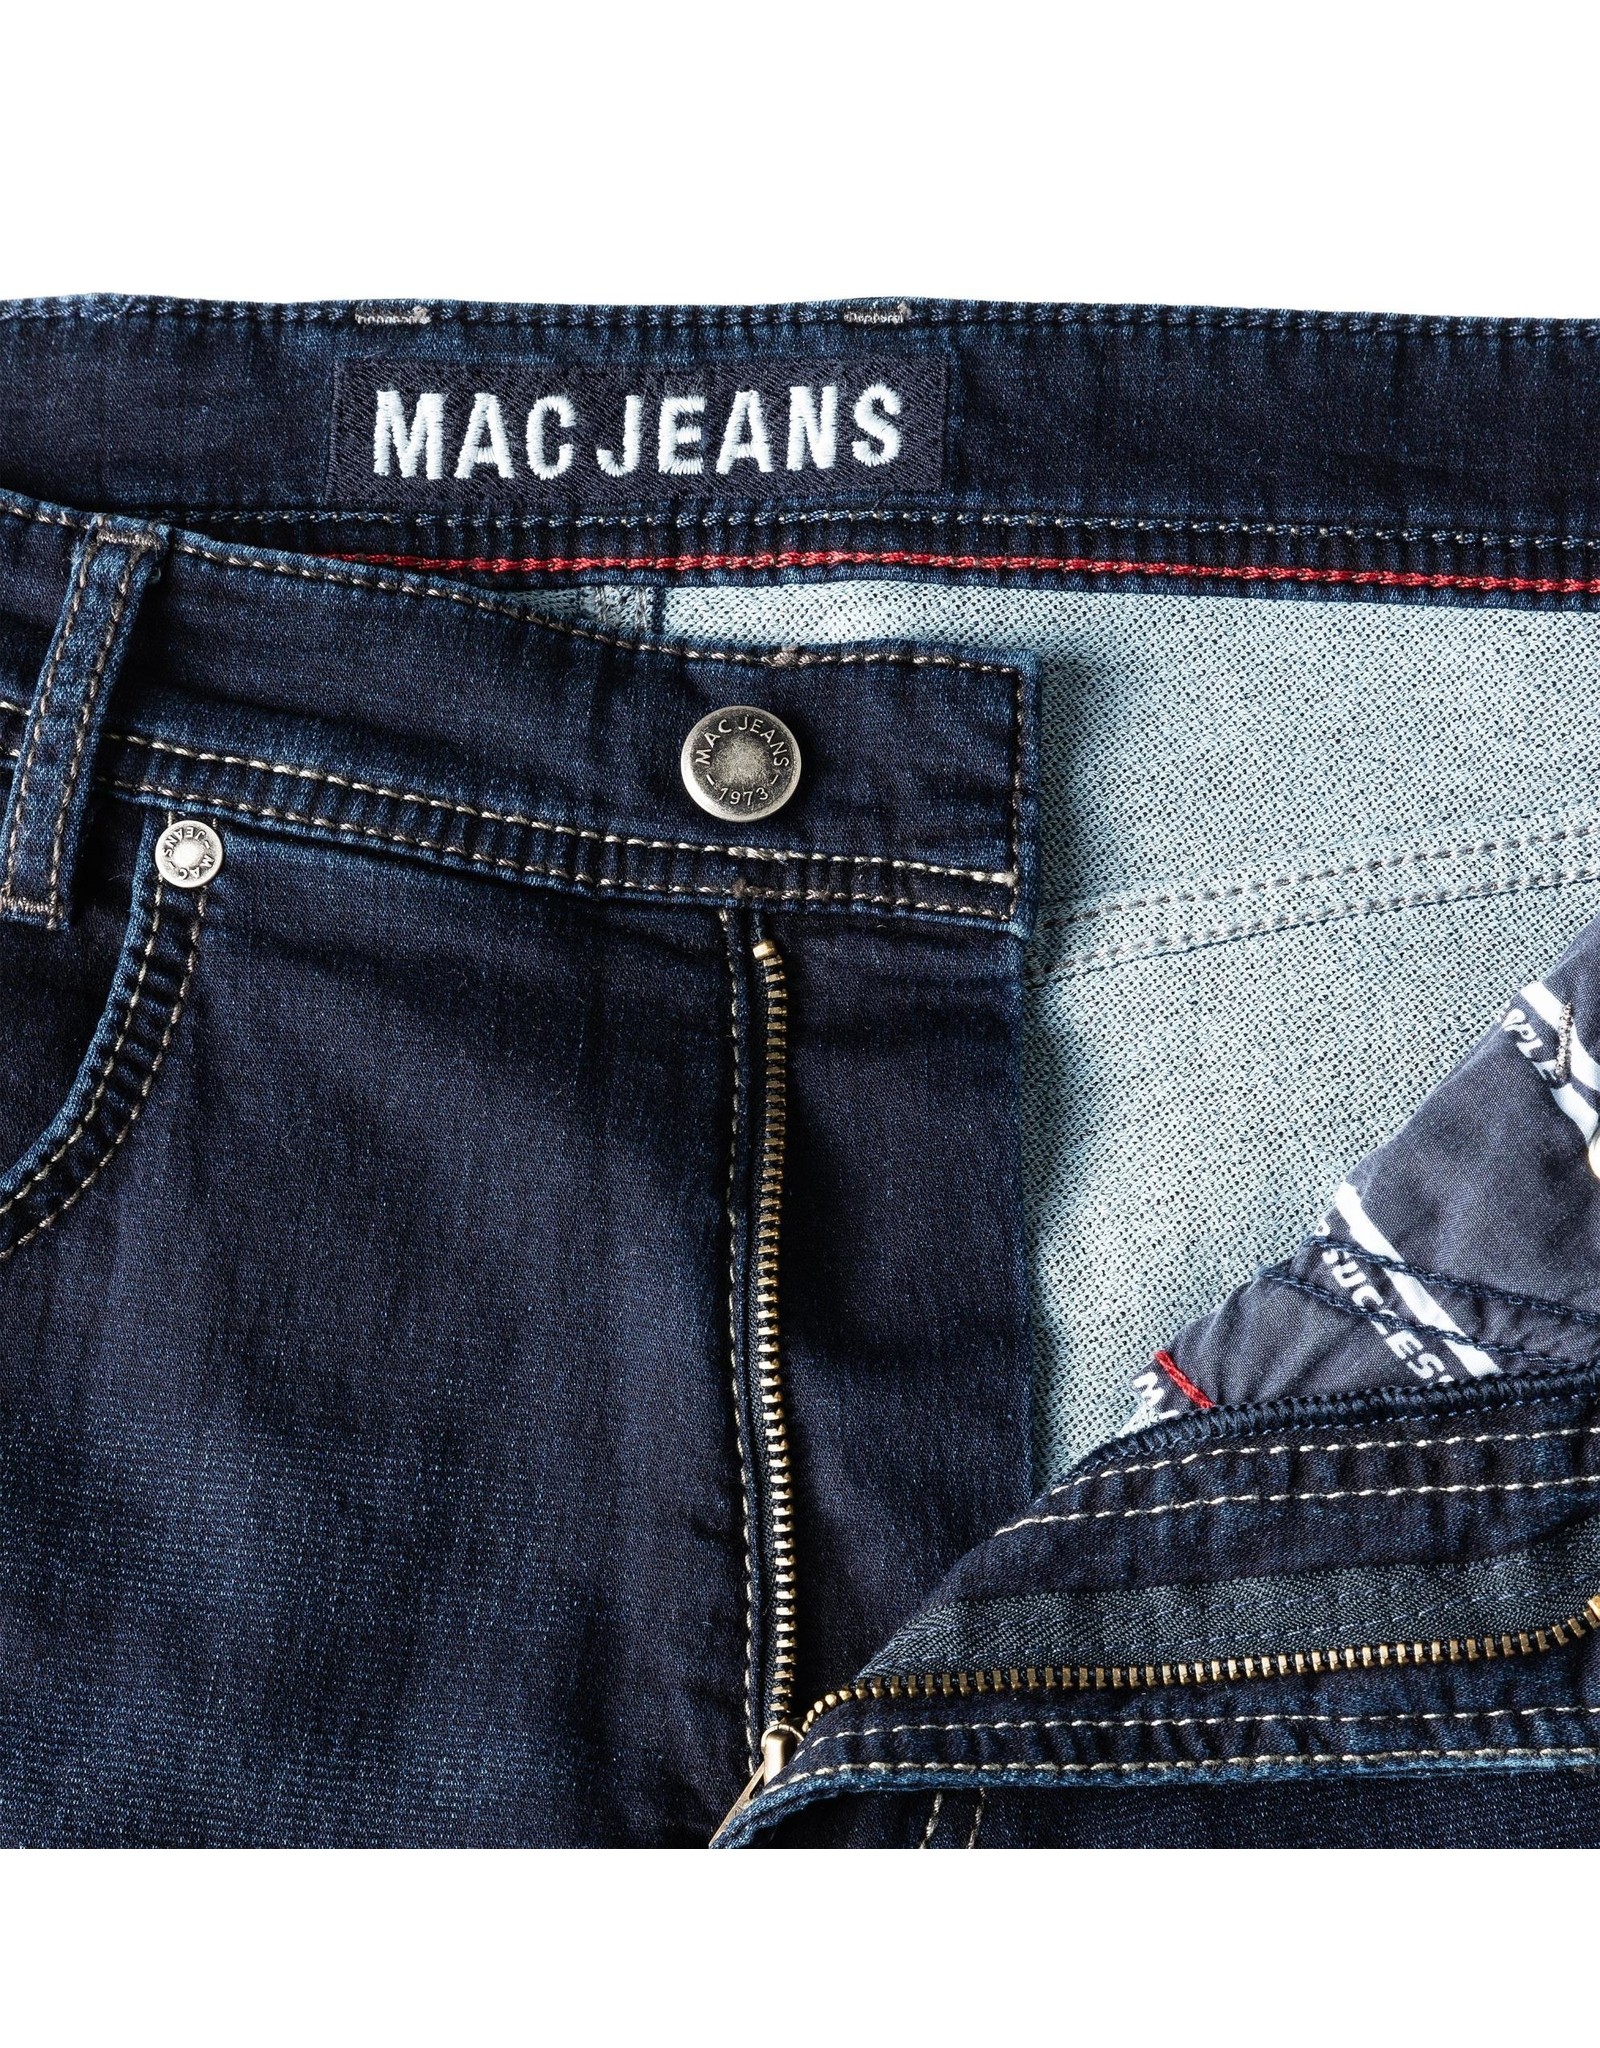 MAC jeans 15 Broek jog 'n jeans H743 auth dark blue